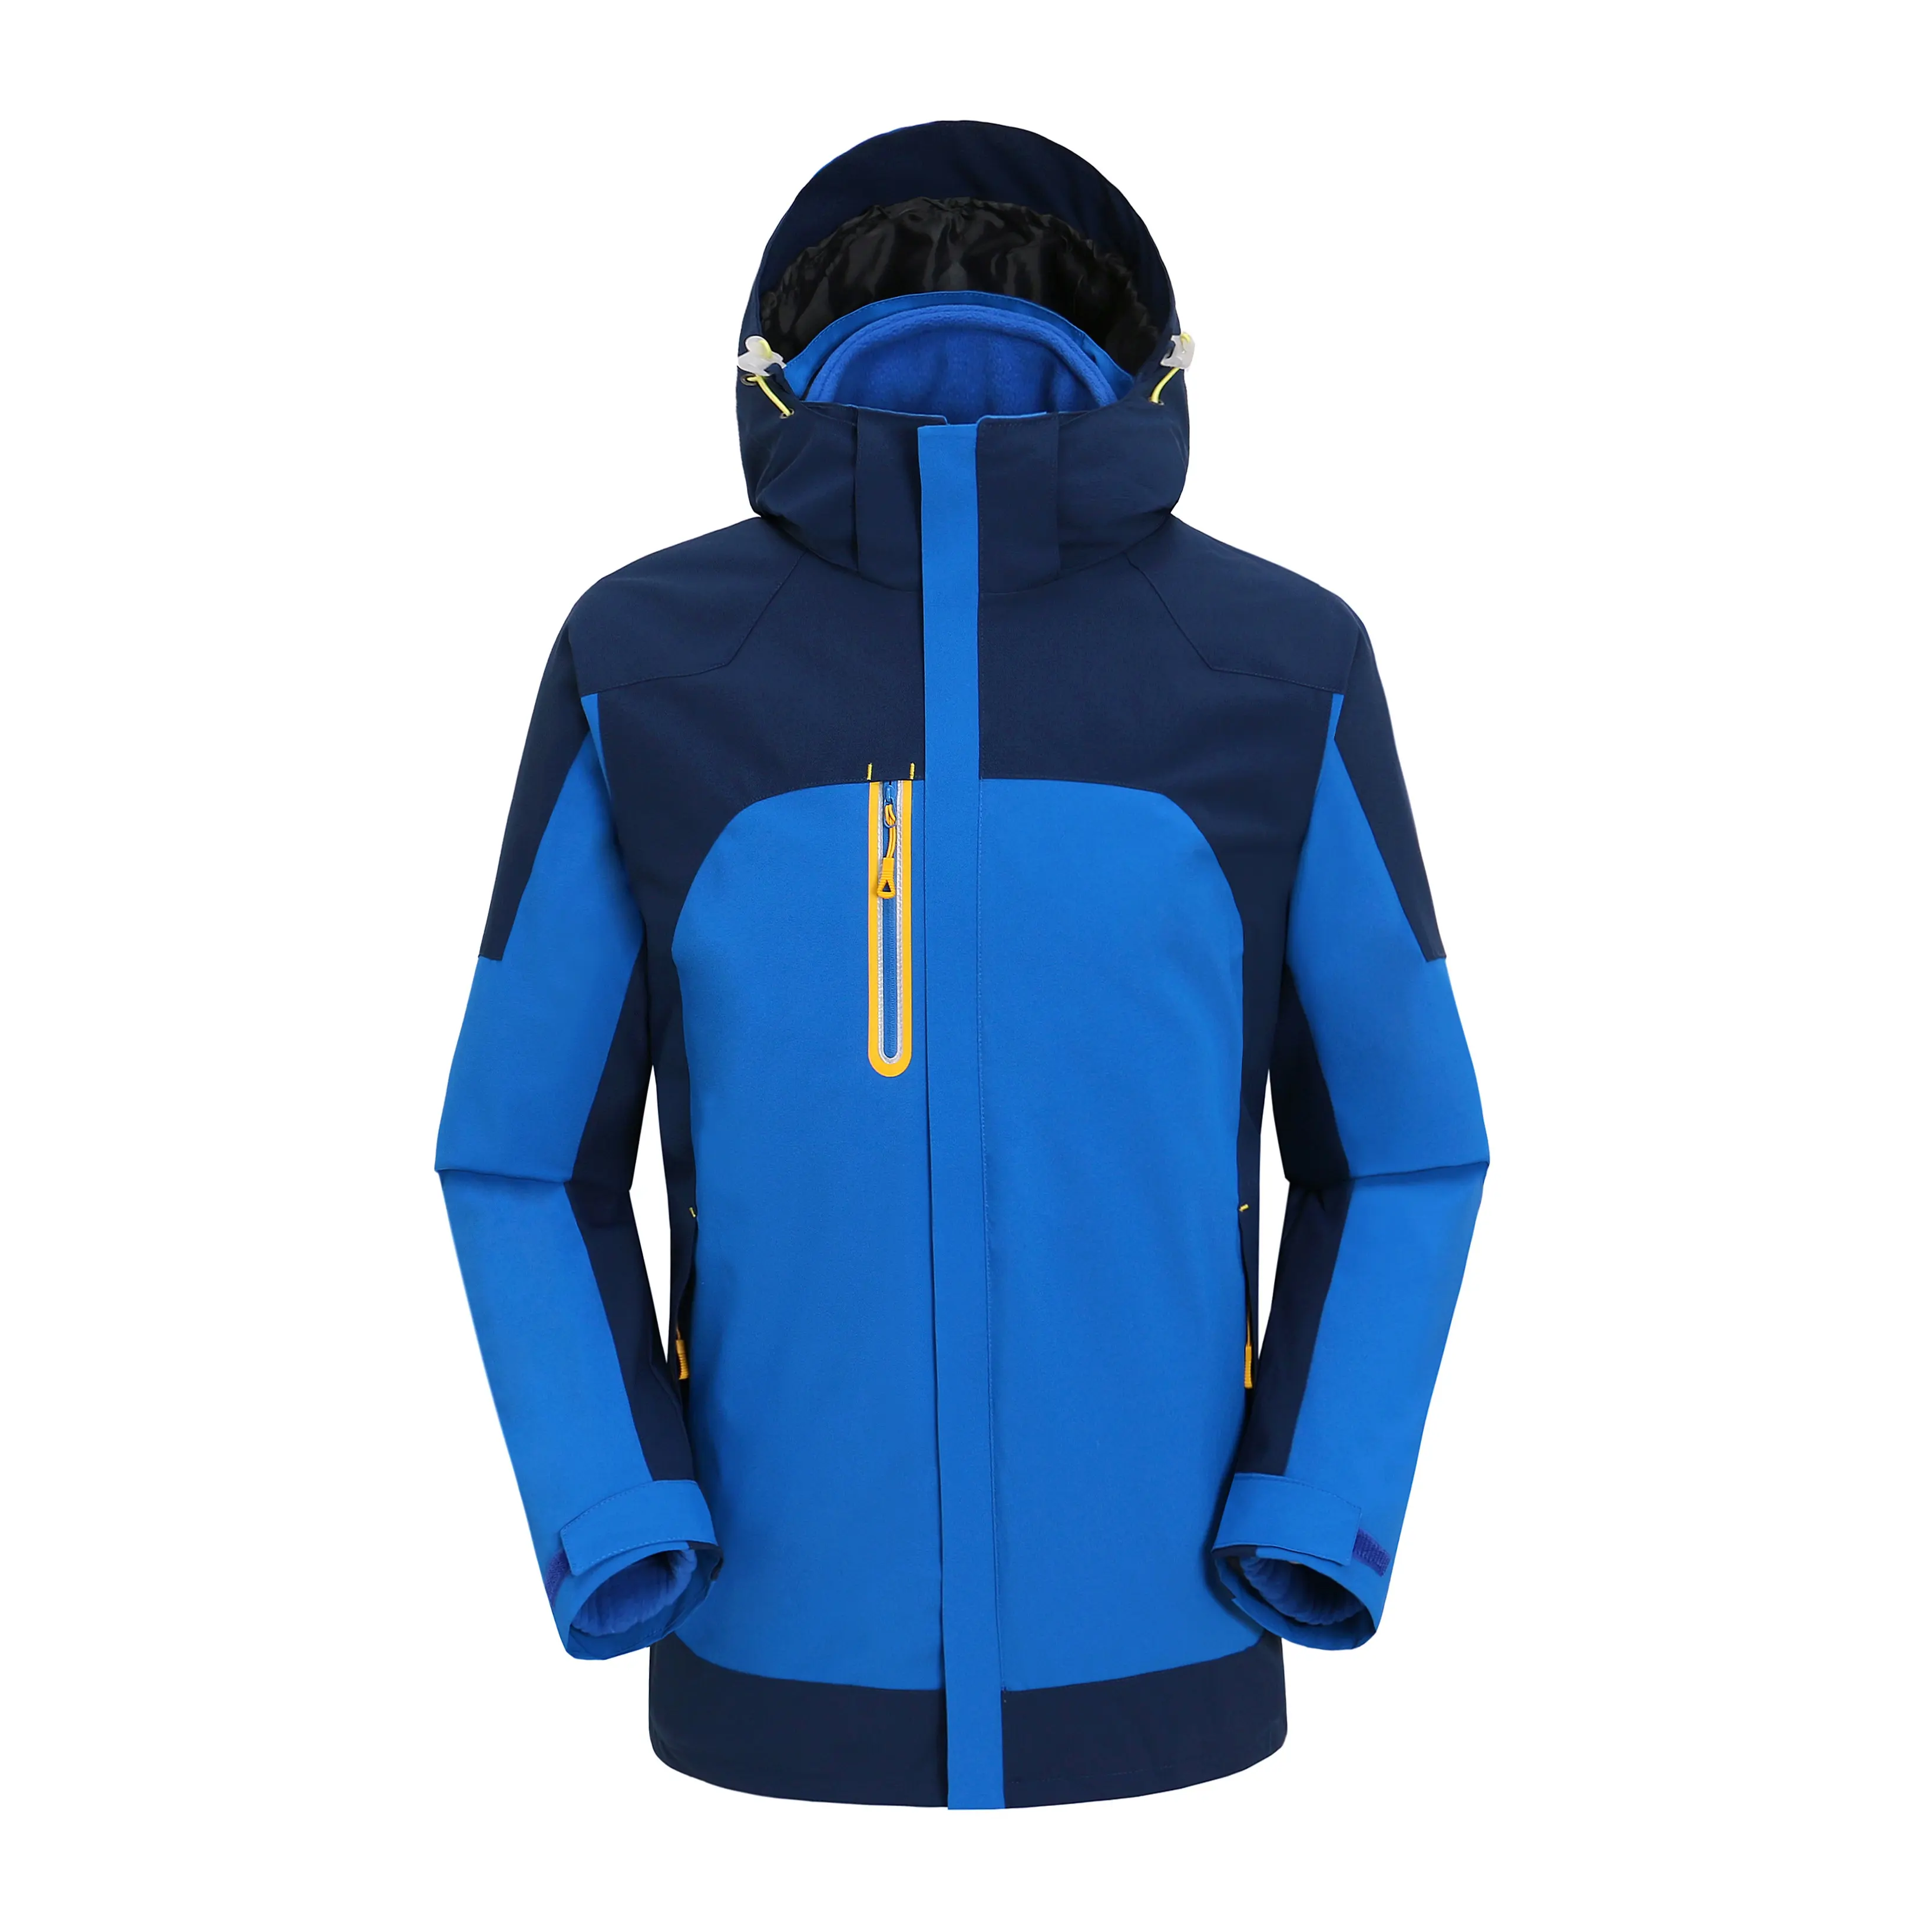 Personalizado al aire libre hombres y mujeres 3 en 1 con capucha impermeable transpirable chaqueta polar senderismo escalada invierno mantener caliente ropa deportiva